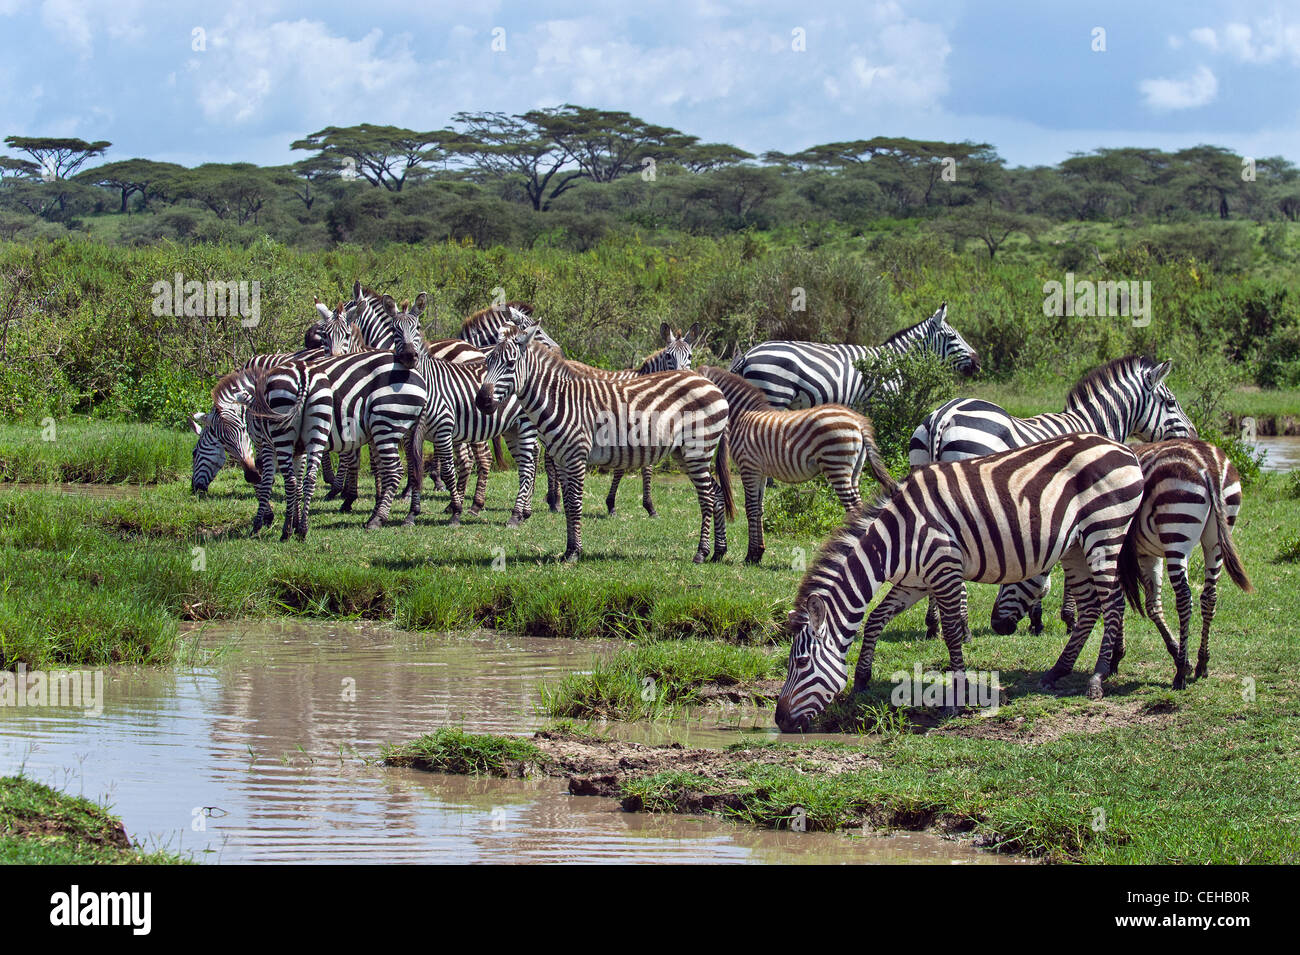 Les zèbres des plaines Equus quagga) à un point d'eau dans la région de Ndutu Ngorongoro Conservation Area - Tanzanie Banque D'Images